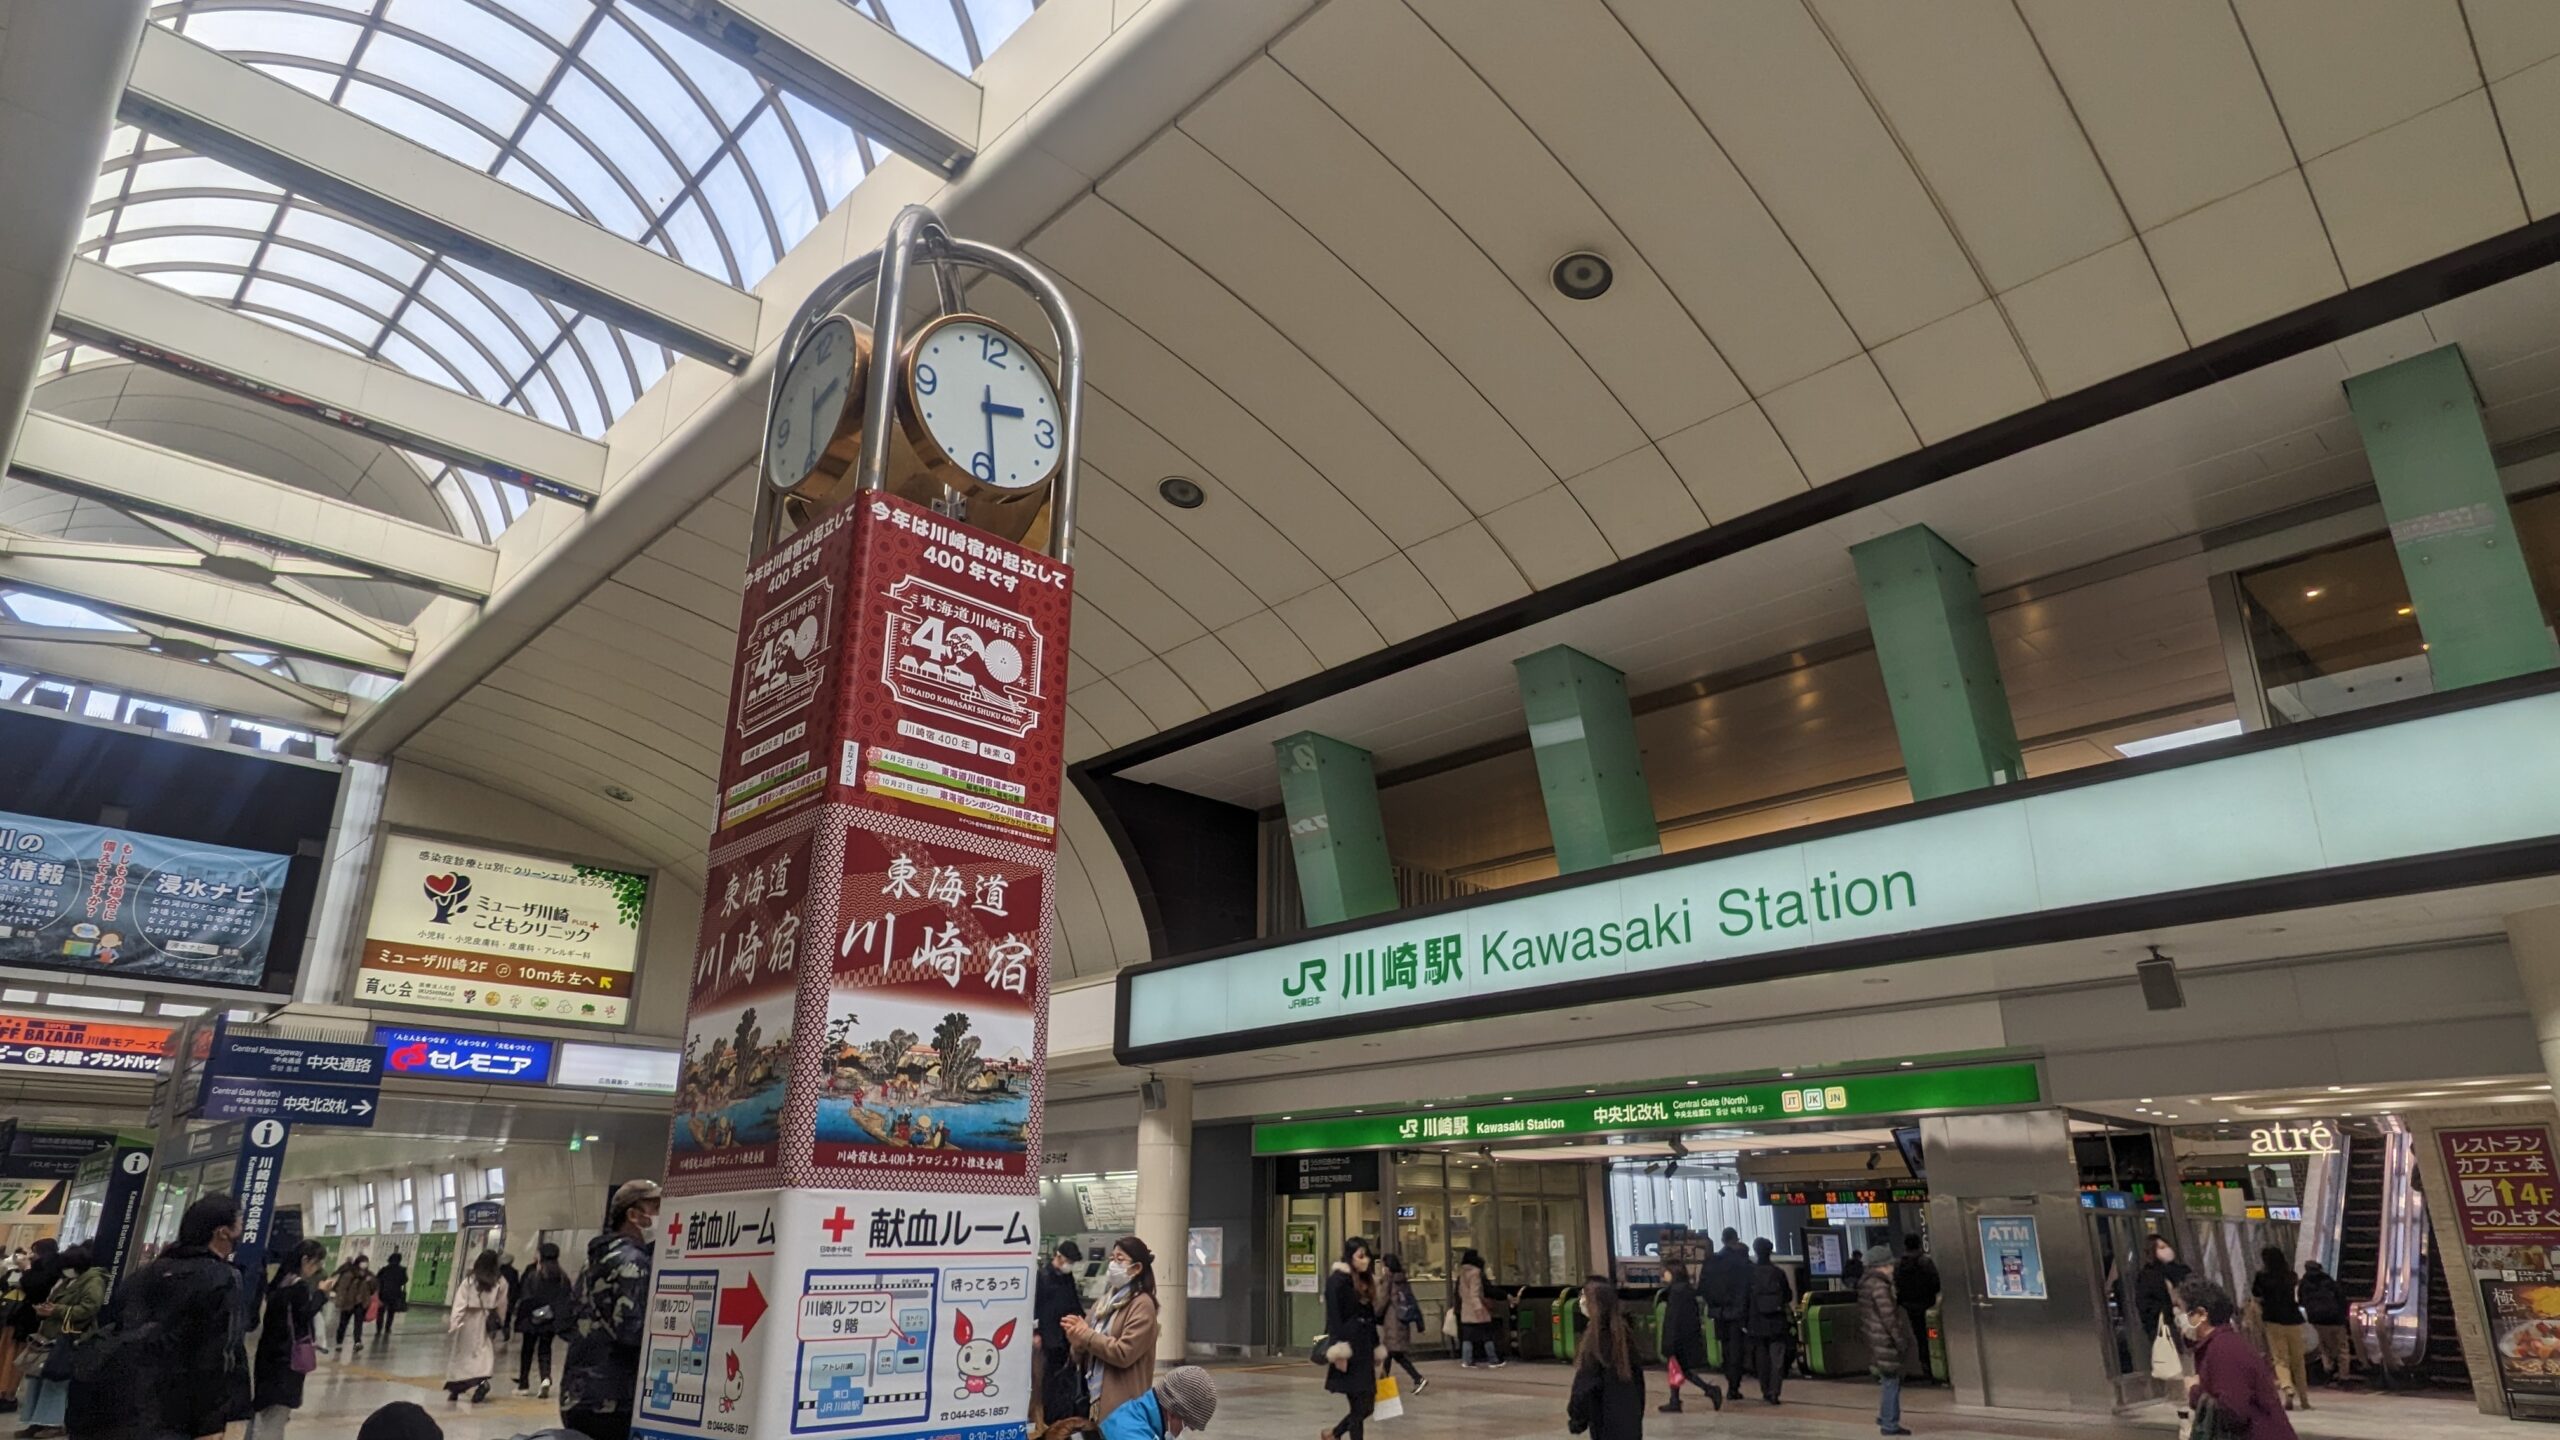 【終了】JR川崎駅前時計台・アトレ壁面に、川崎宿の広告が出現